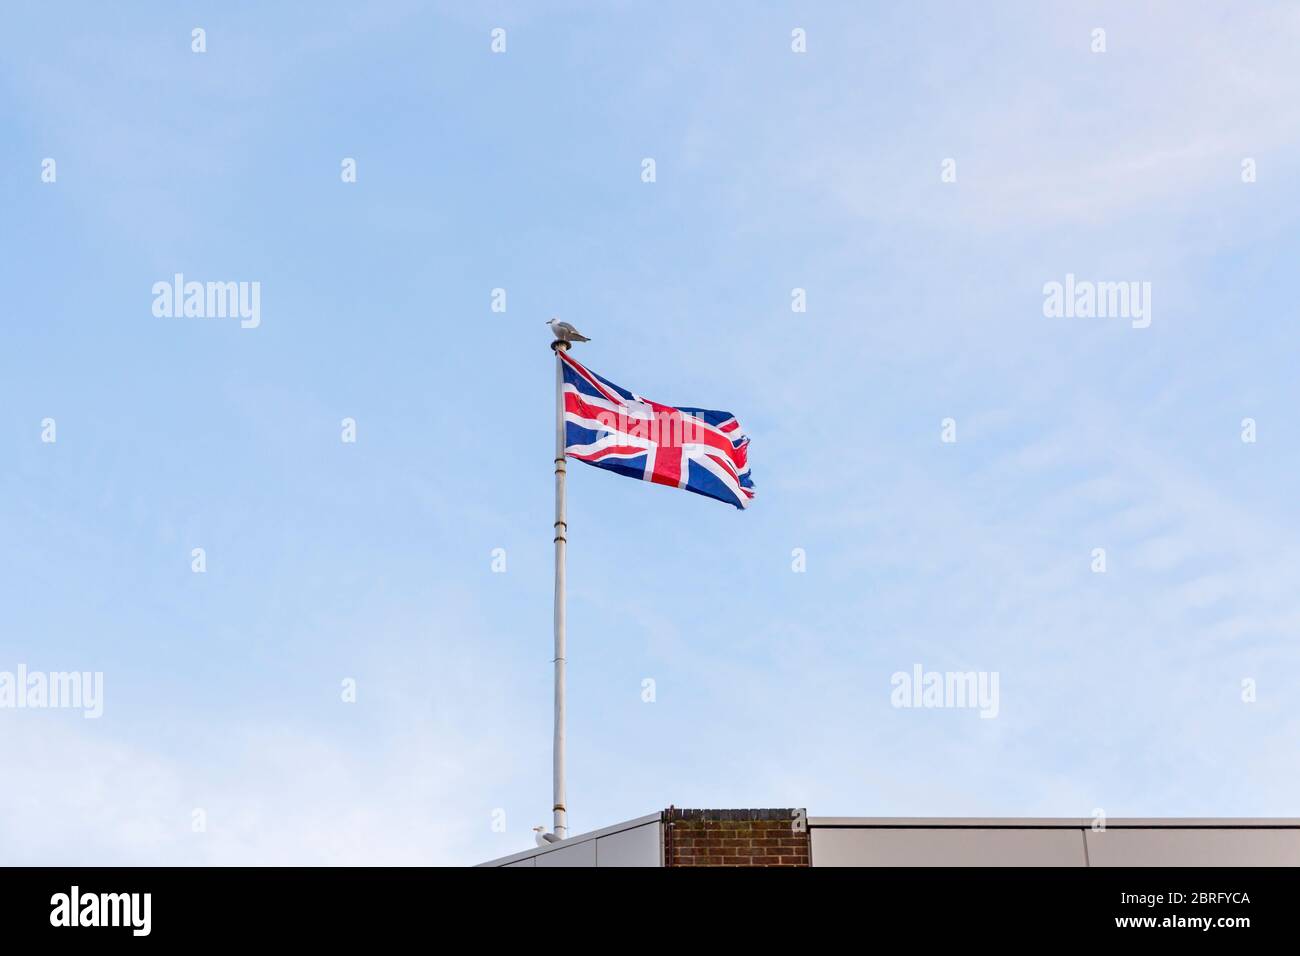 Drapeau du Royaume-Uni, drapeau d'Angleterre brodé sur le ciel bleu sur le toit d'un bâtiment. Banque D'Images